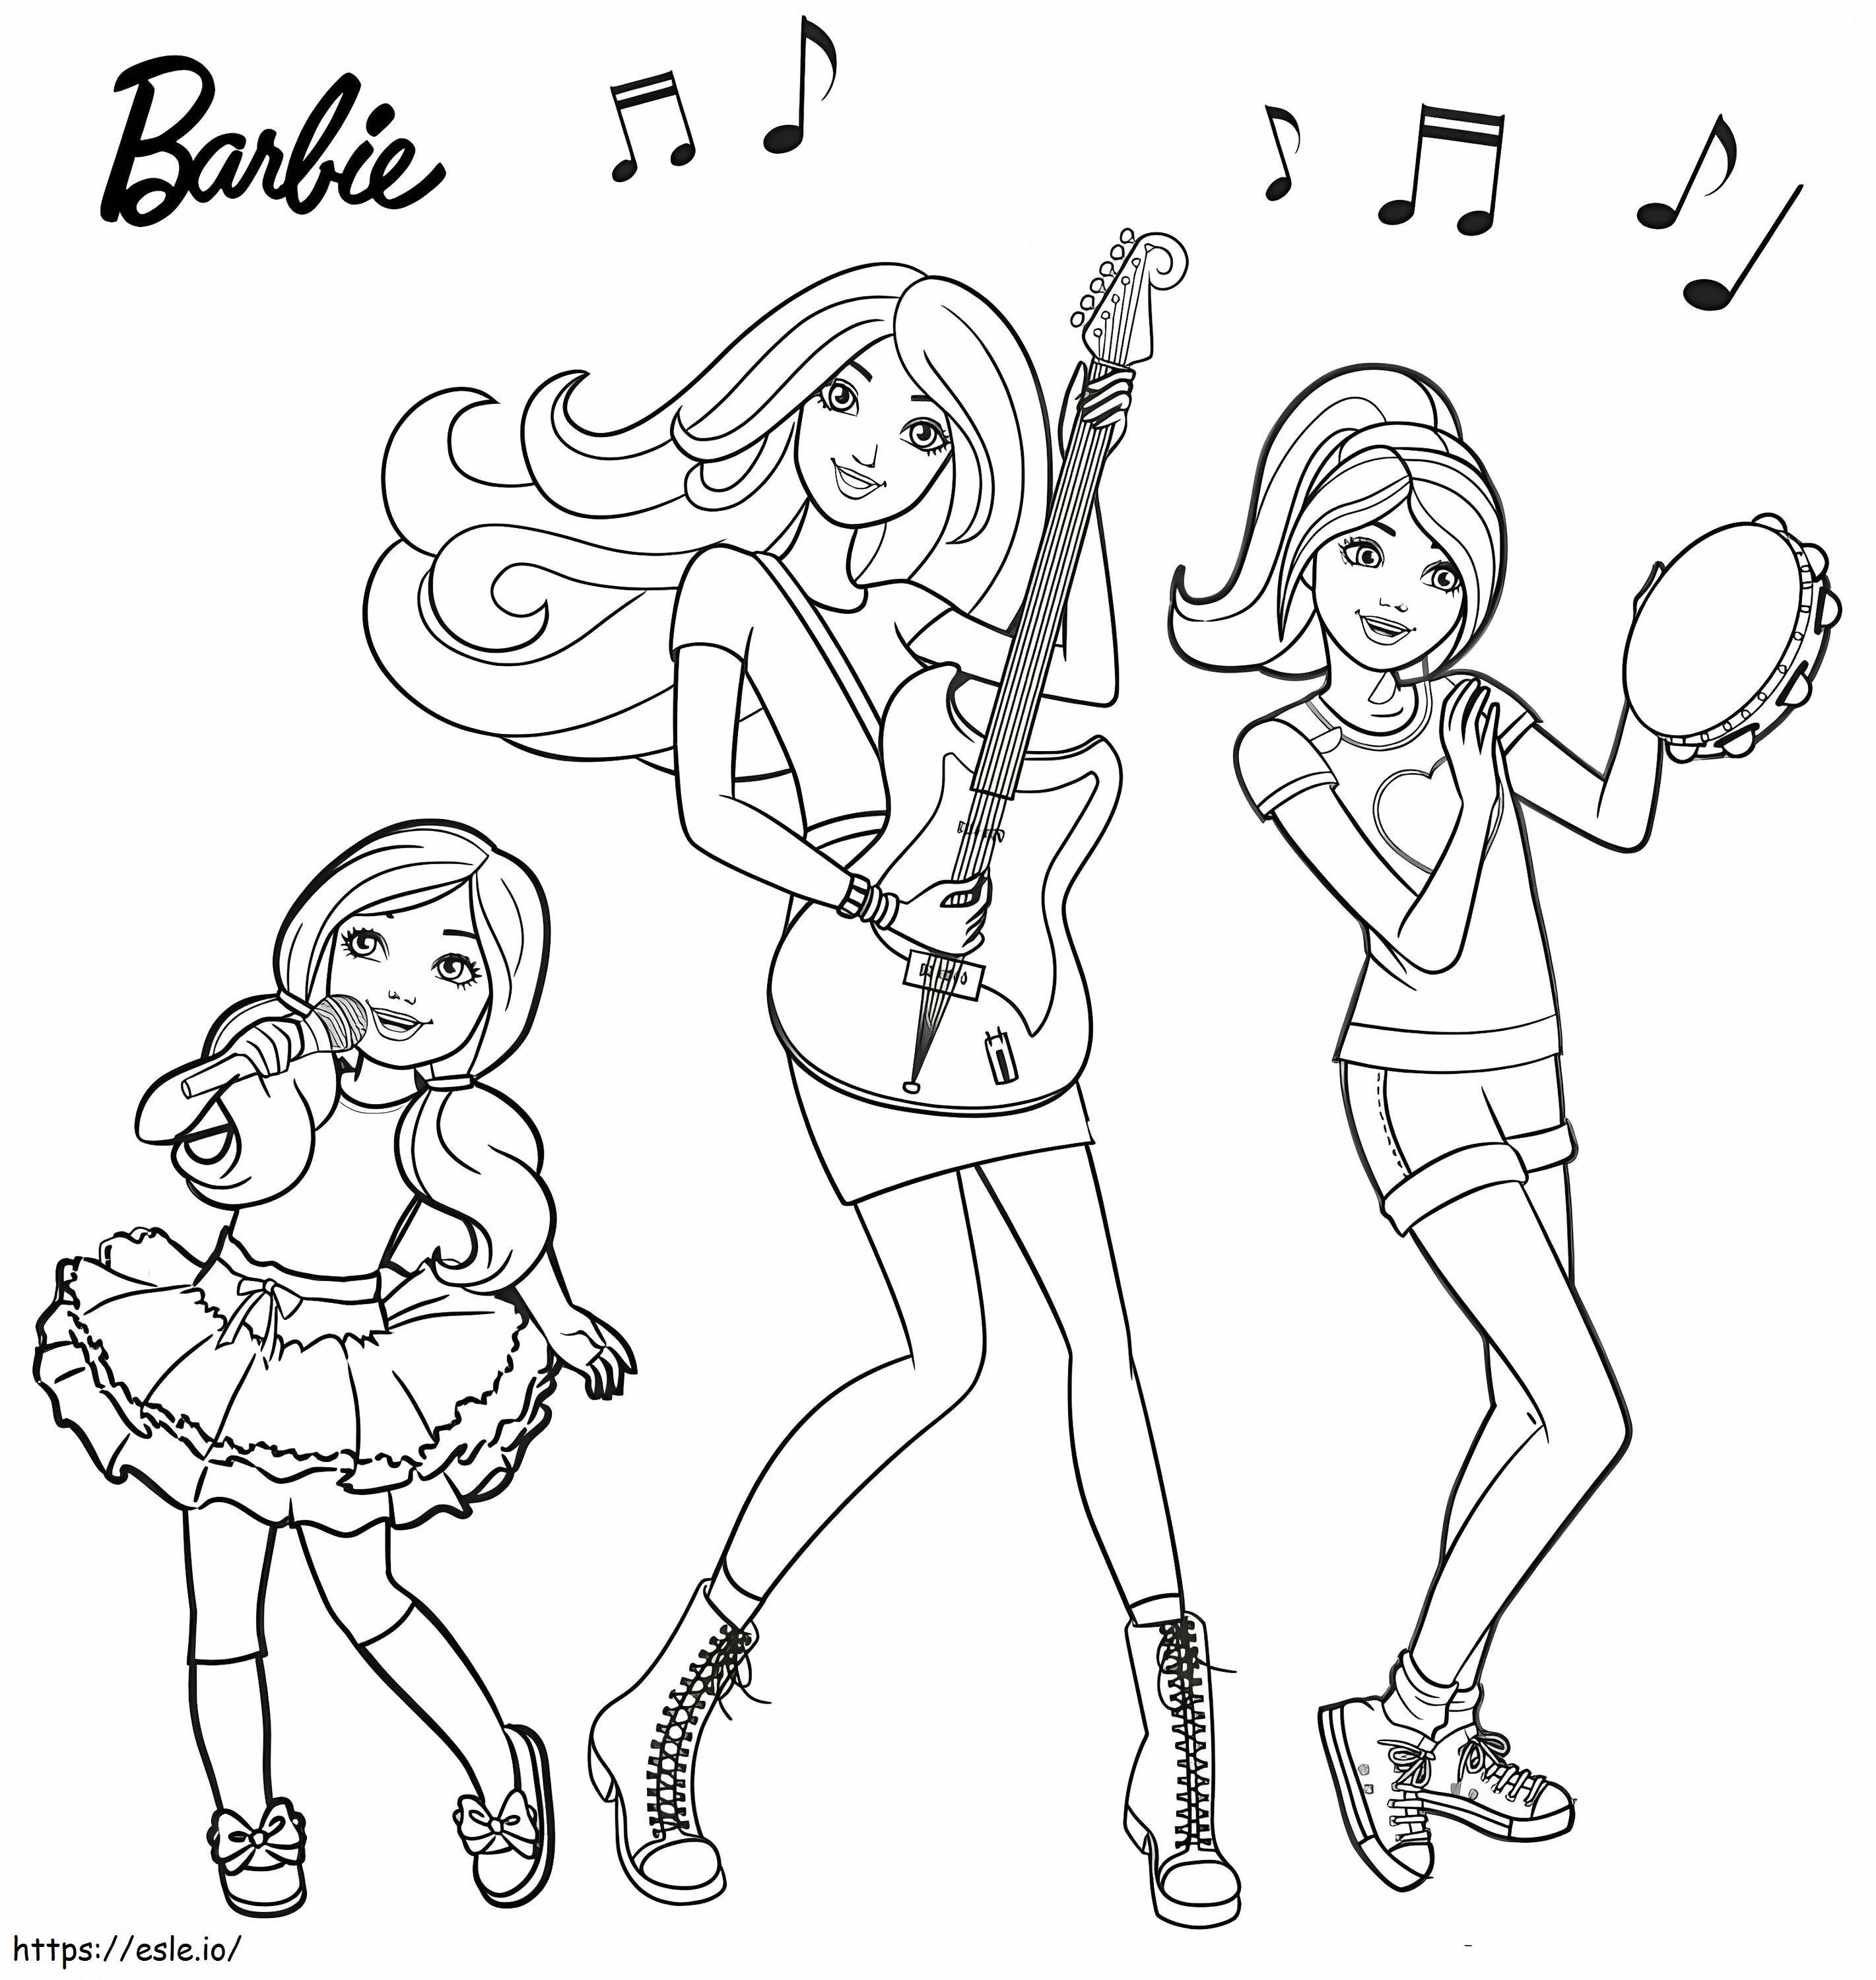 Barbie i grupa muzyczna kolorowanka